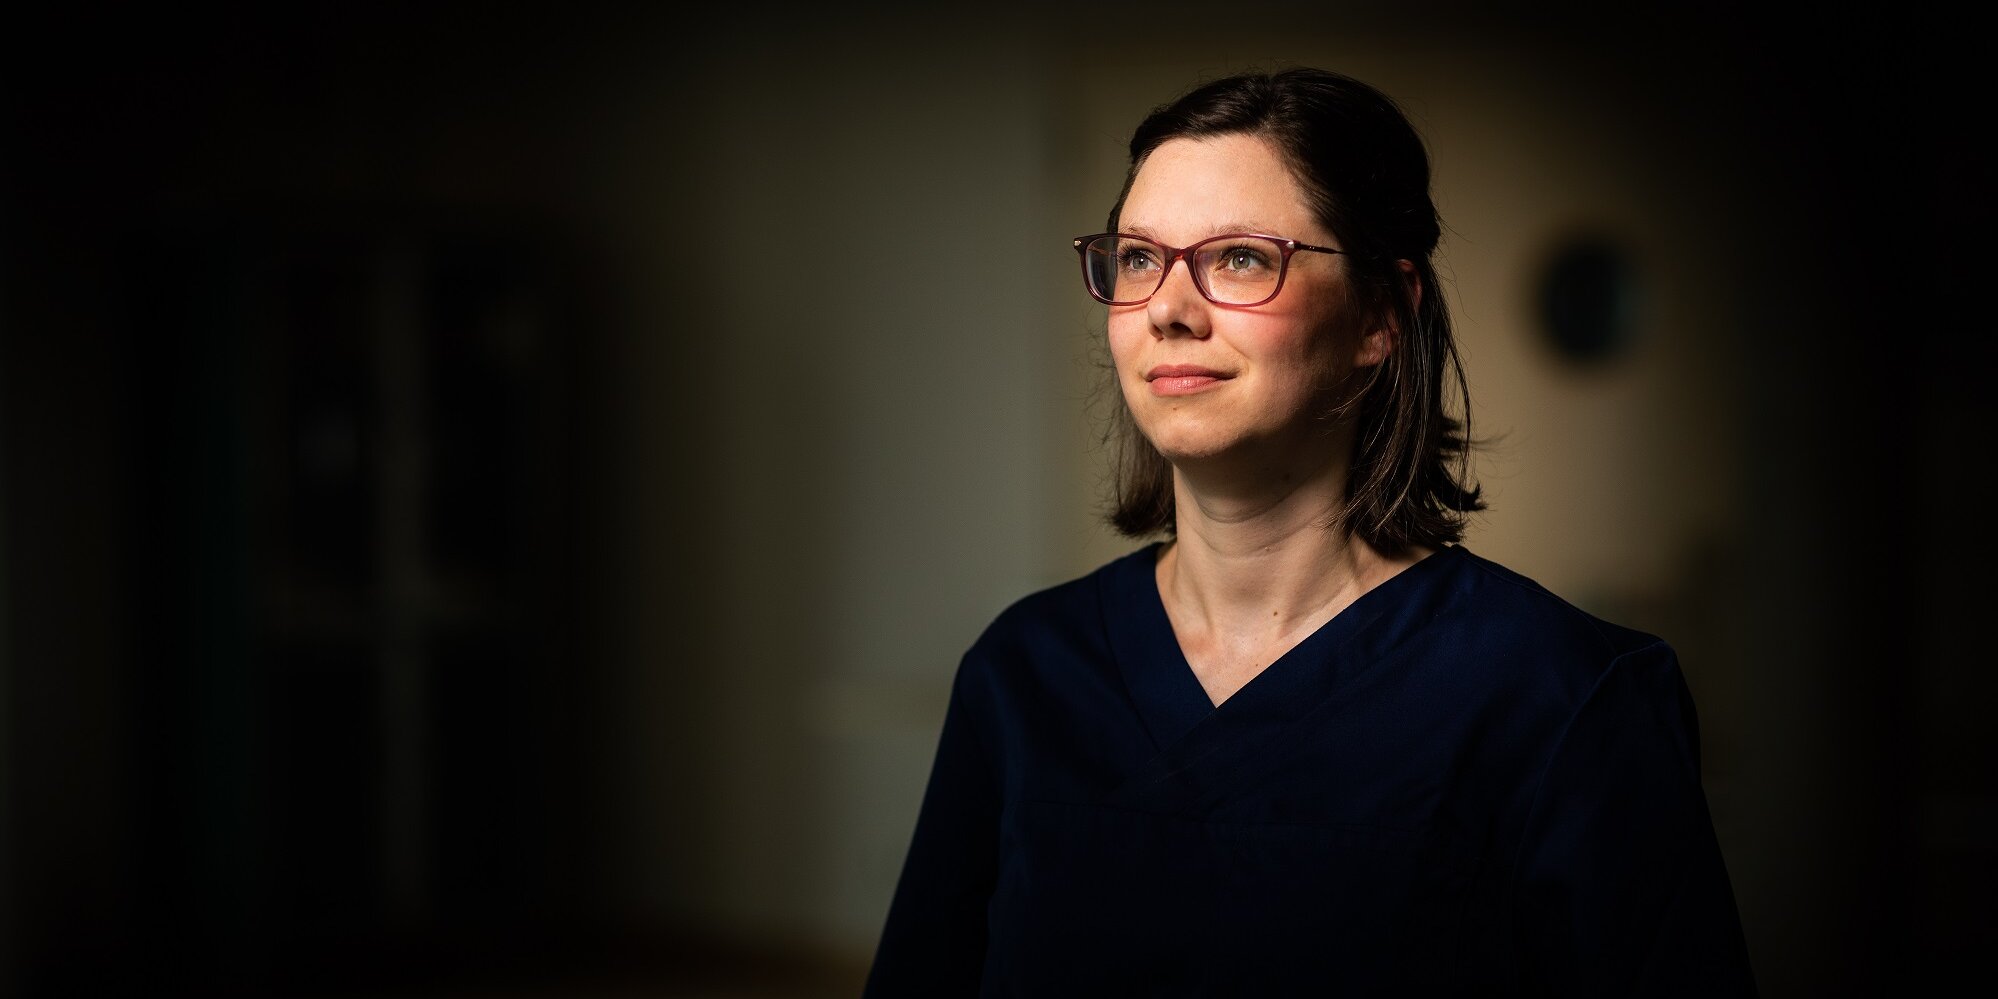 Gina, Gesundheits- und Krankenpflegerin, seit 2018 in der Gefäßchirurgie im Evangelischen Krankenhaus Hubertus